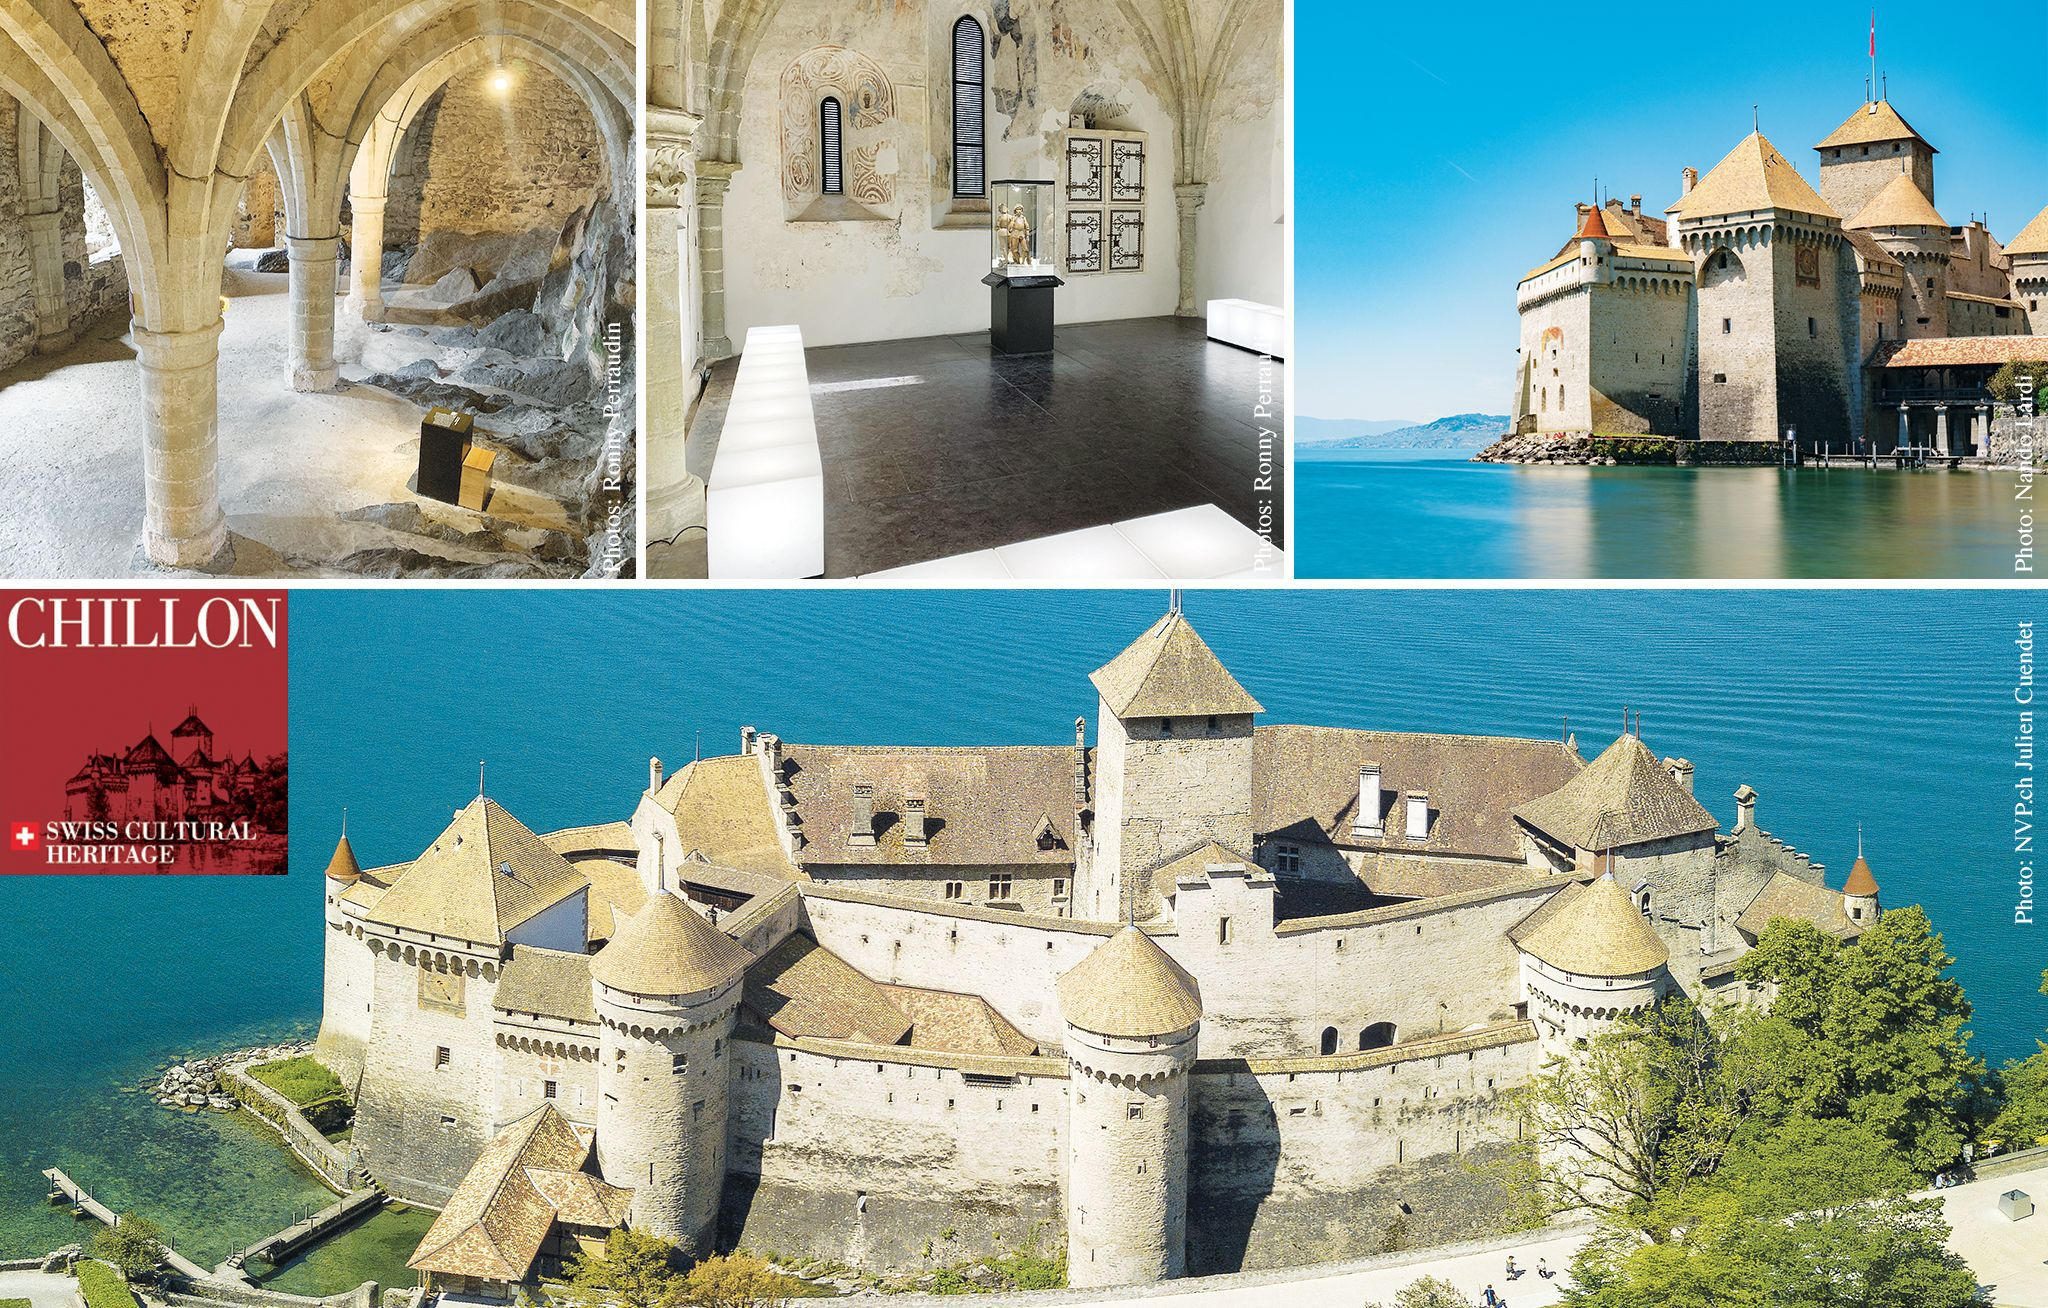 Chillon Le château médiéval et romantique à visiter absolument cChic Magazine Suisse